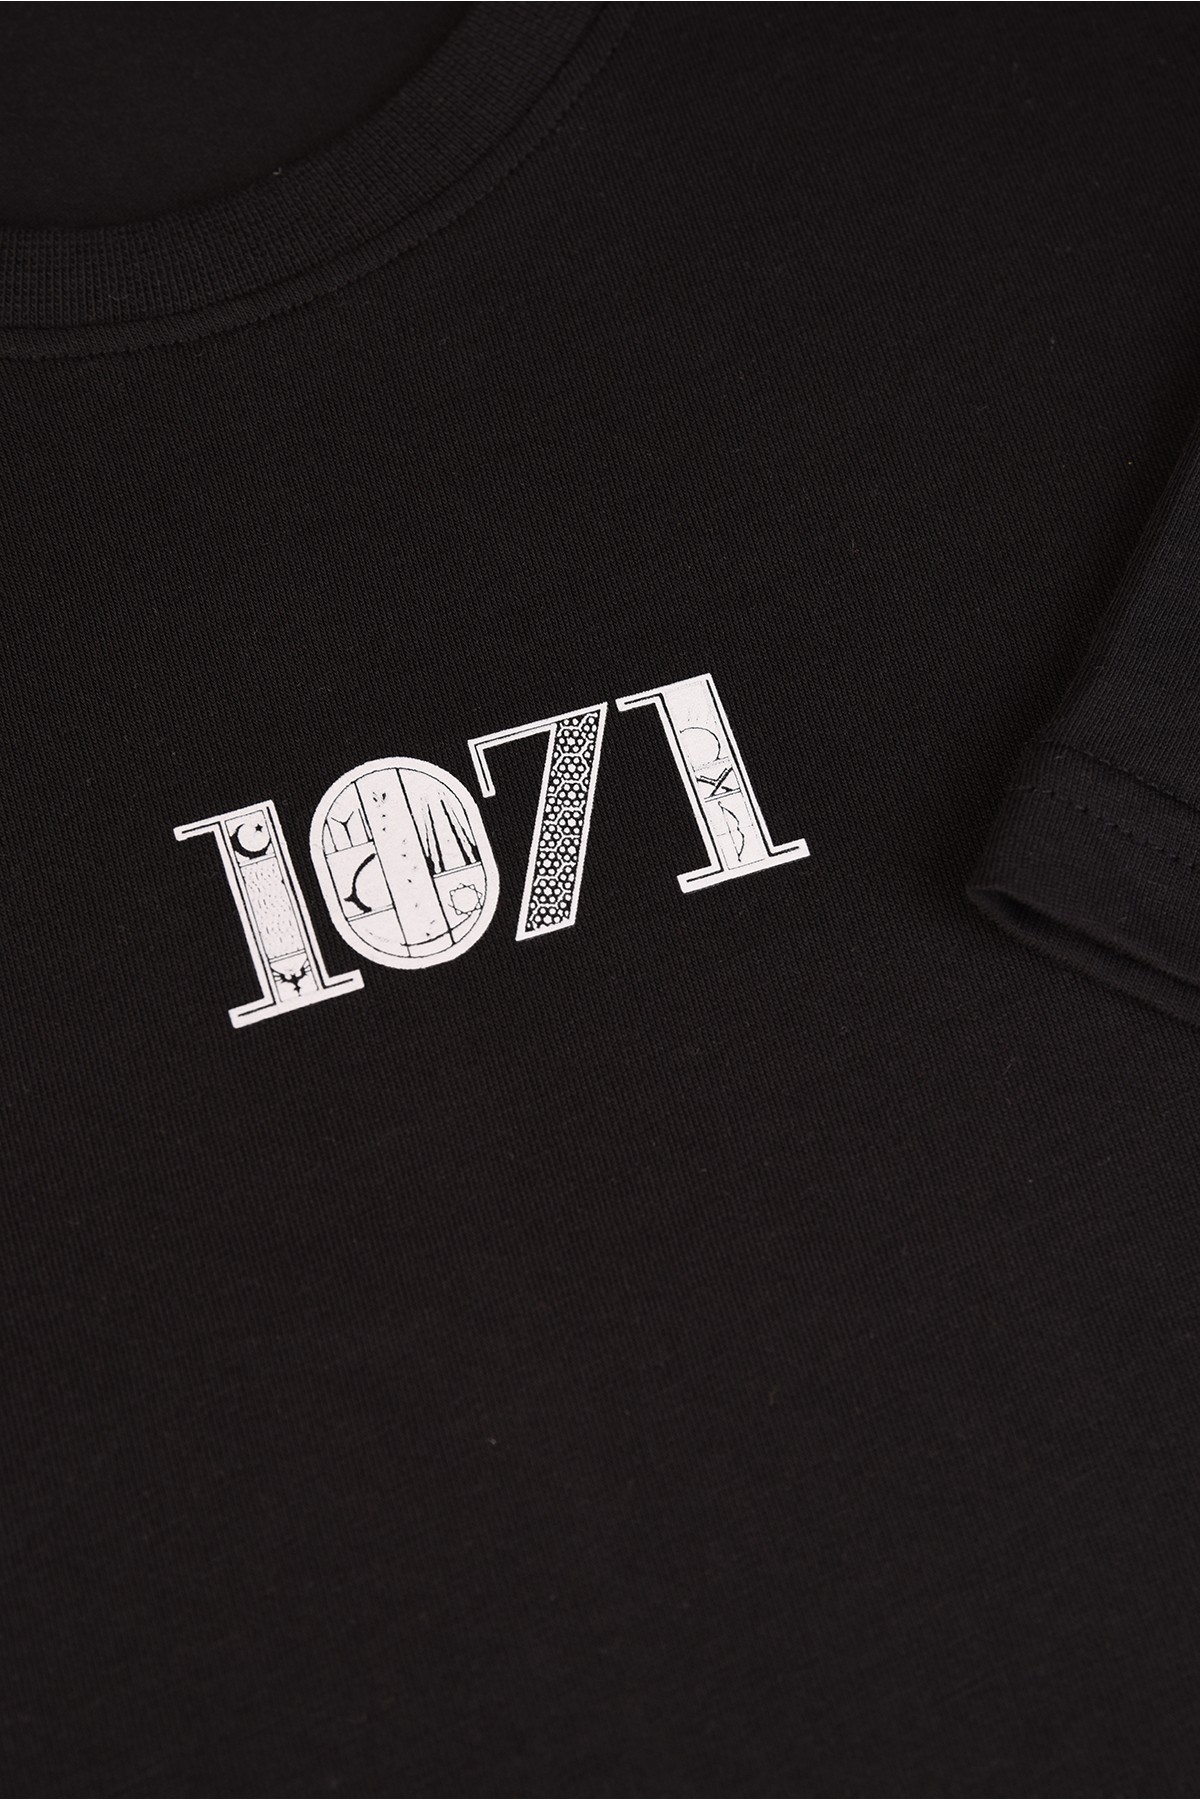 Yeni Sezon 1071 Tasarım Pamuk Bisiklet Yaka Siyah T-shirt 23'